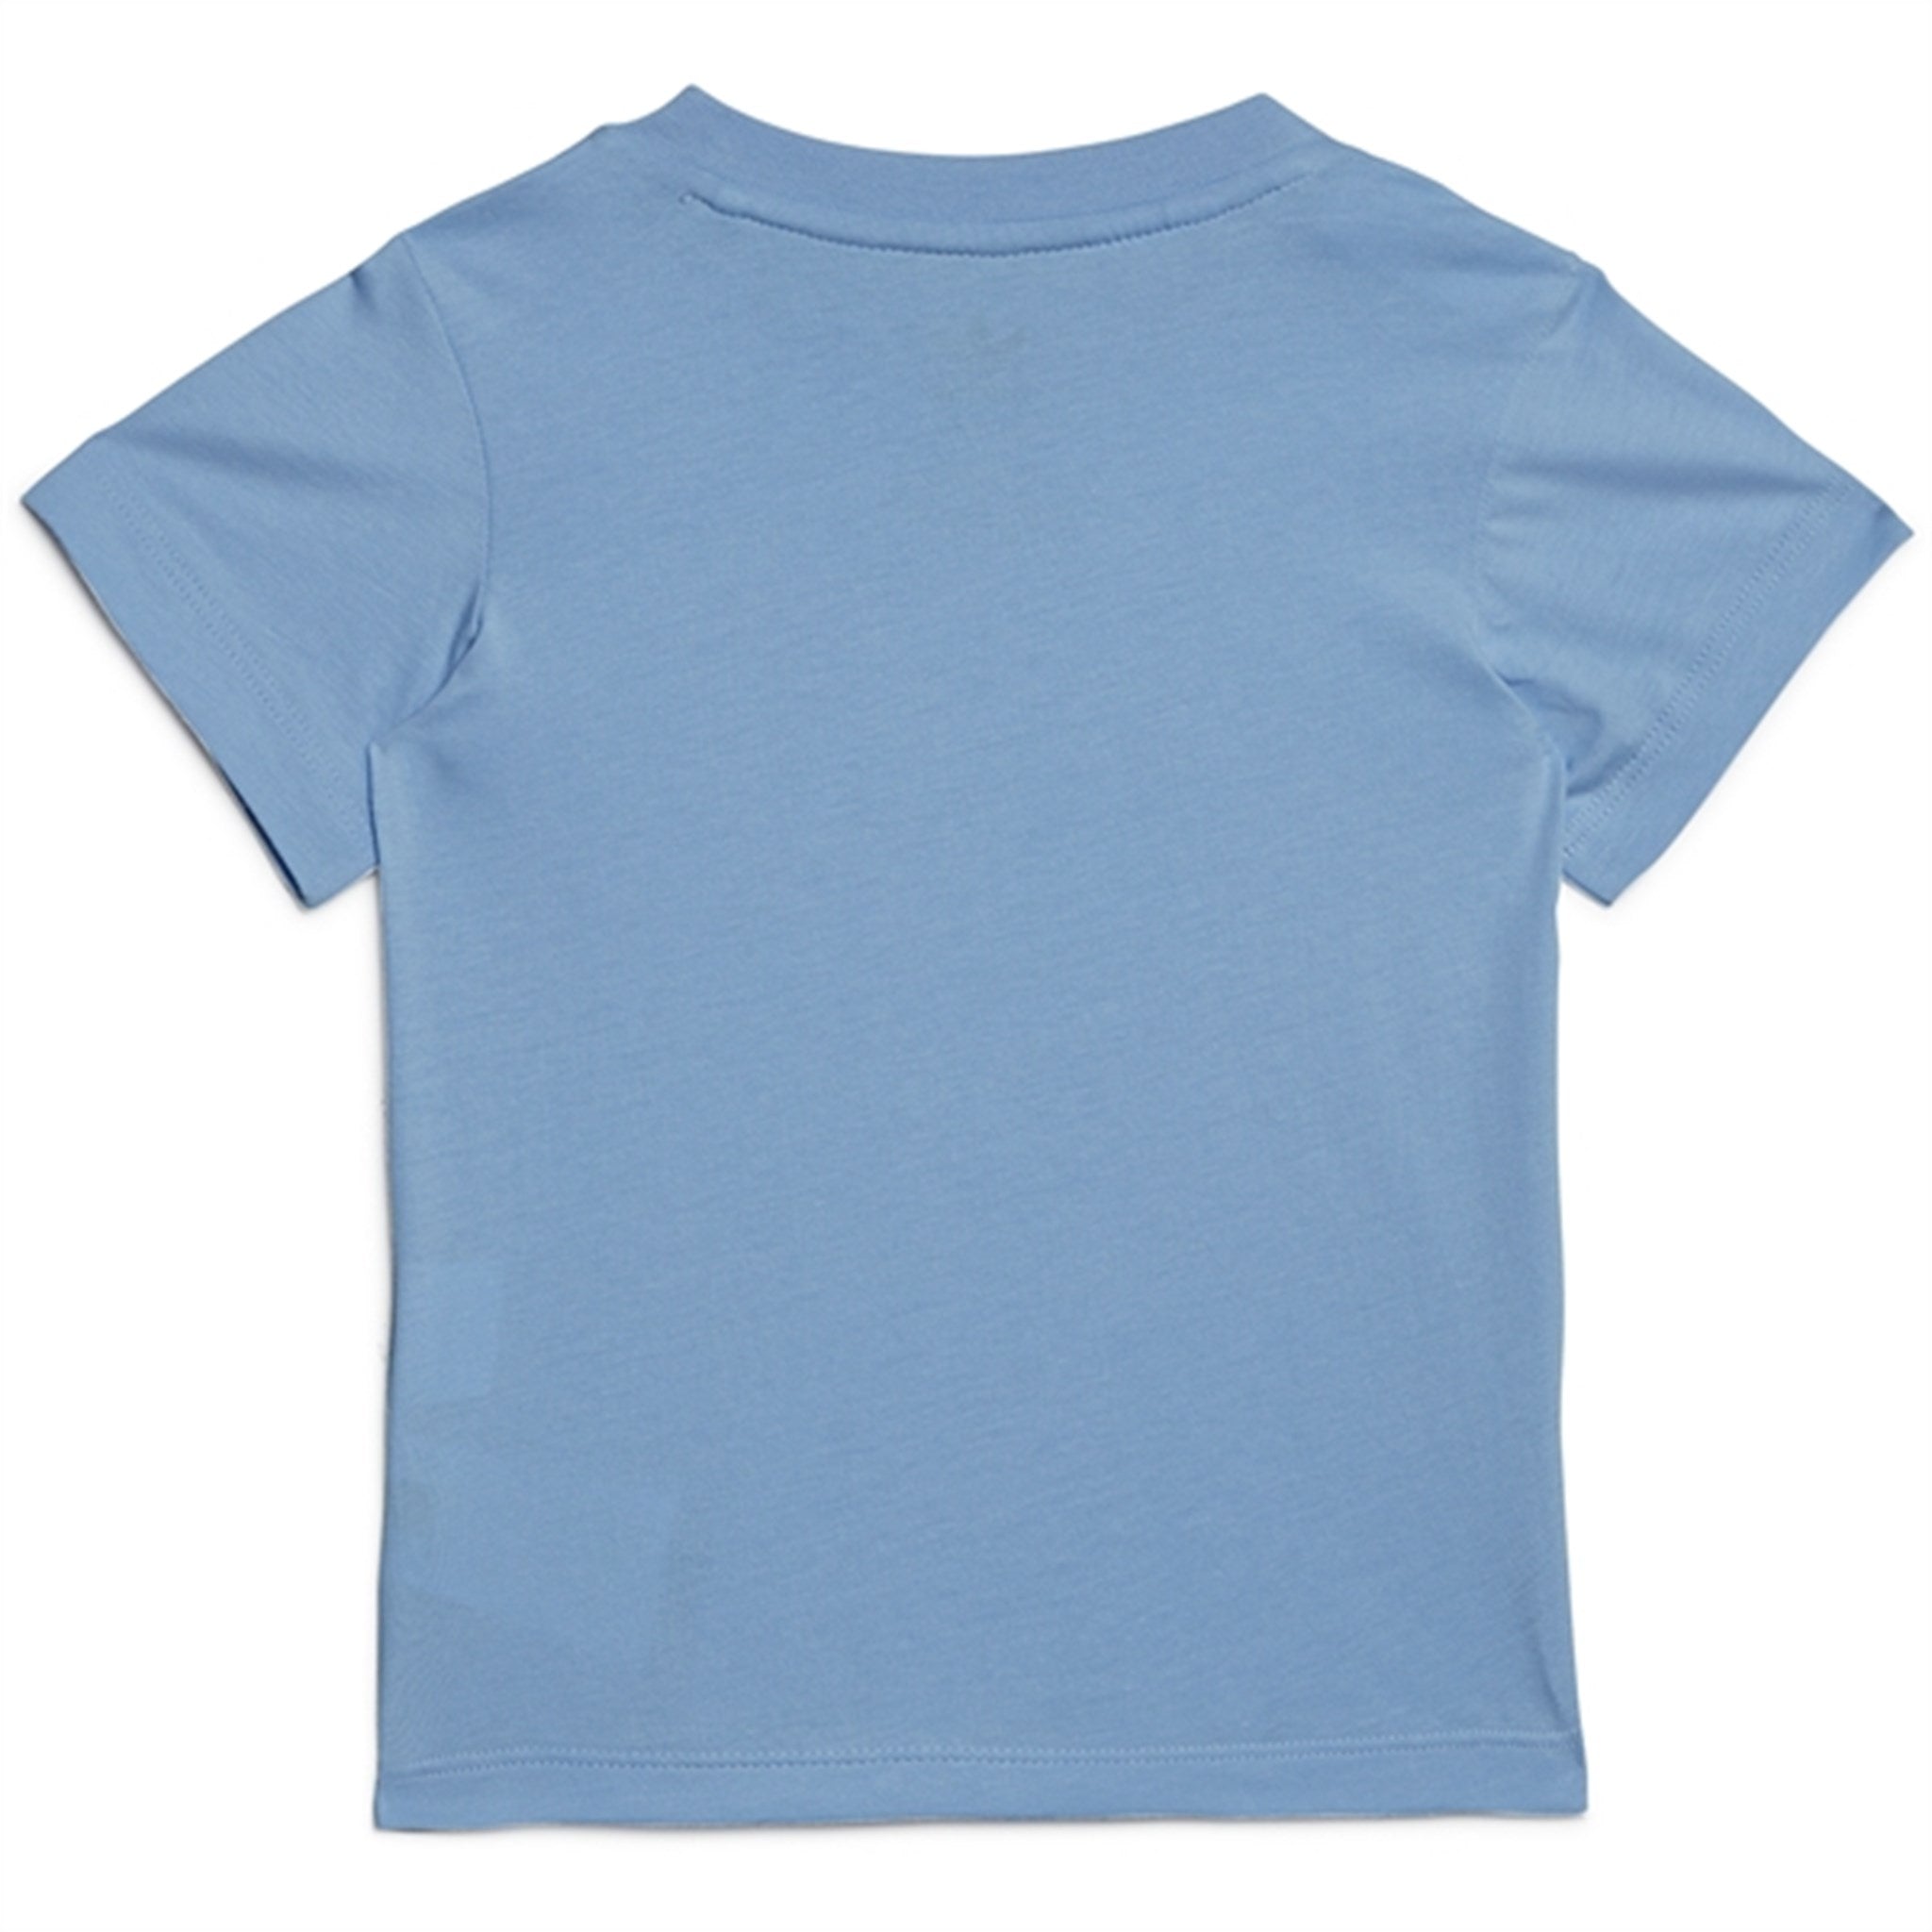 adidas Originals Light Blue T-Shirt 5